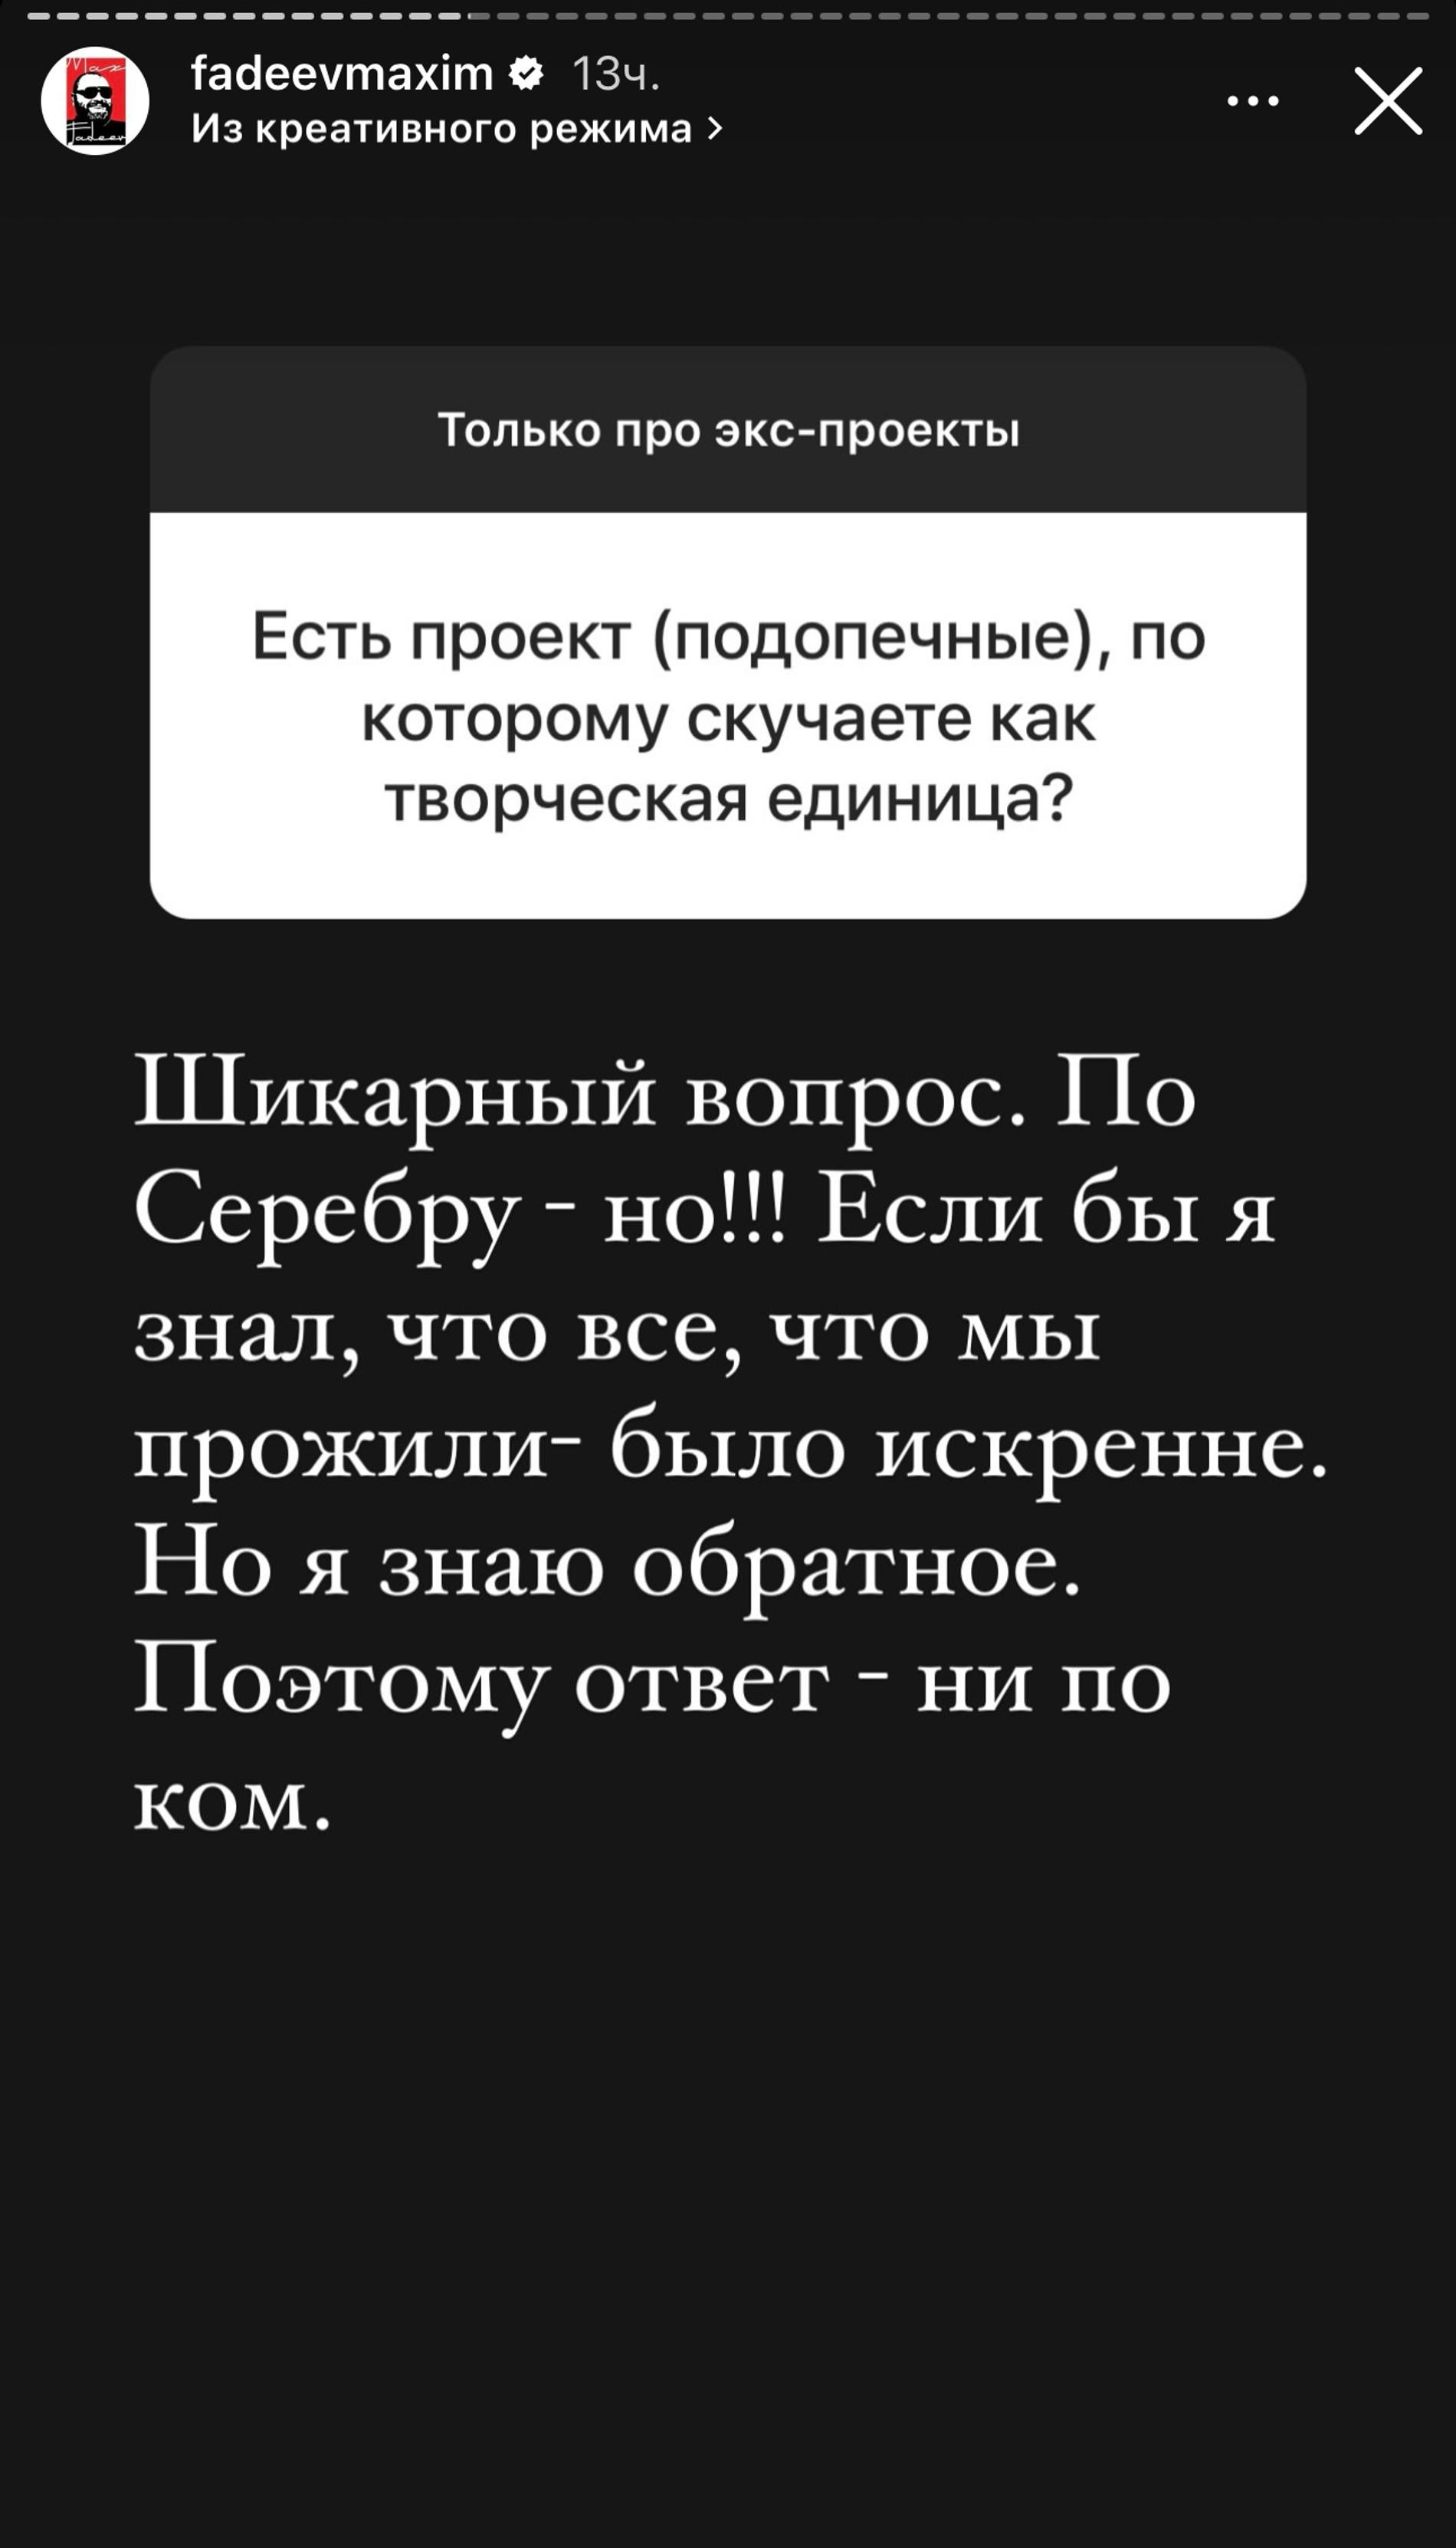 Максим Фадеев в своем аккаунте в Инстаграме*